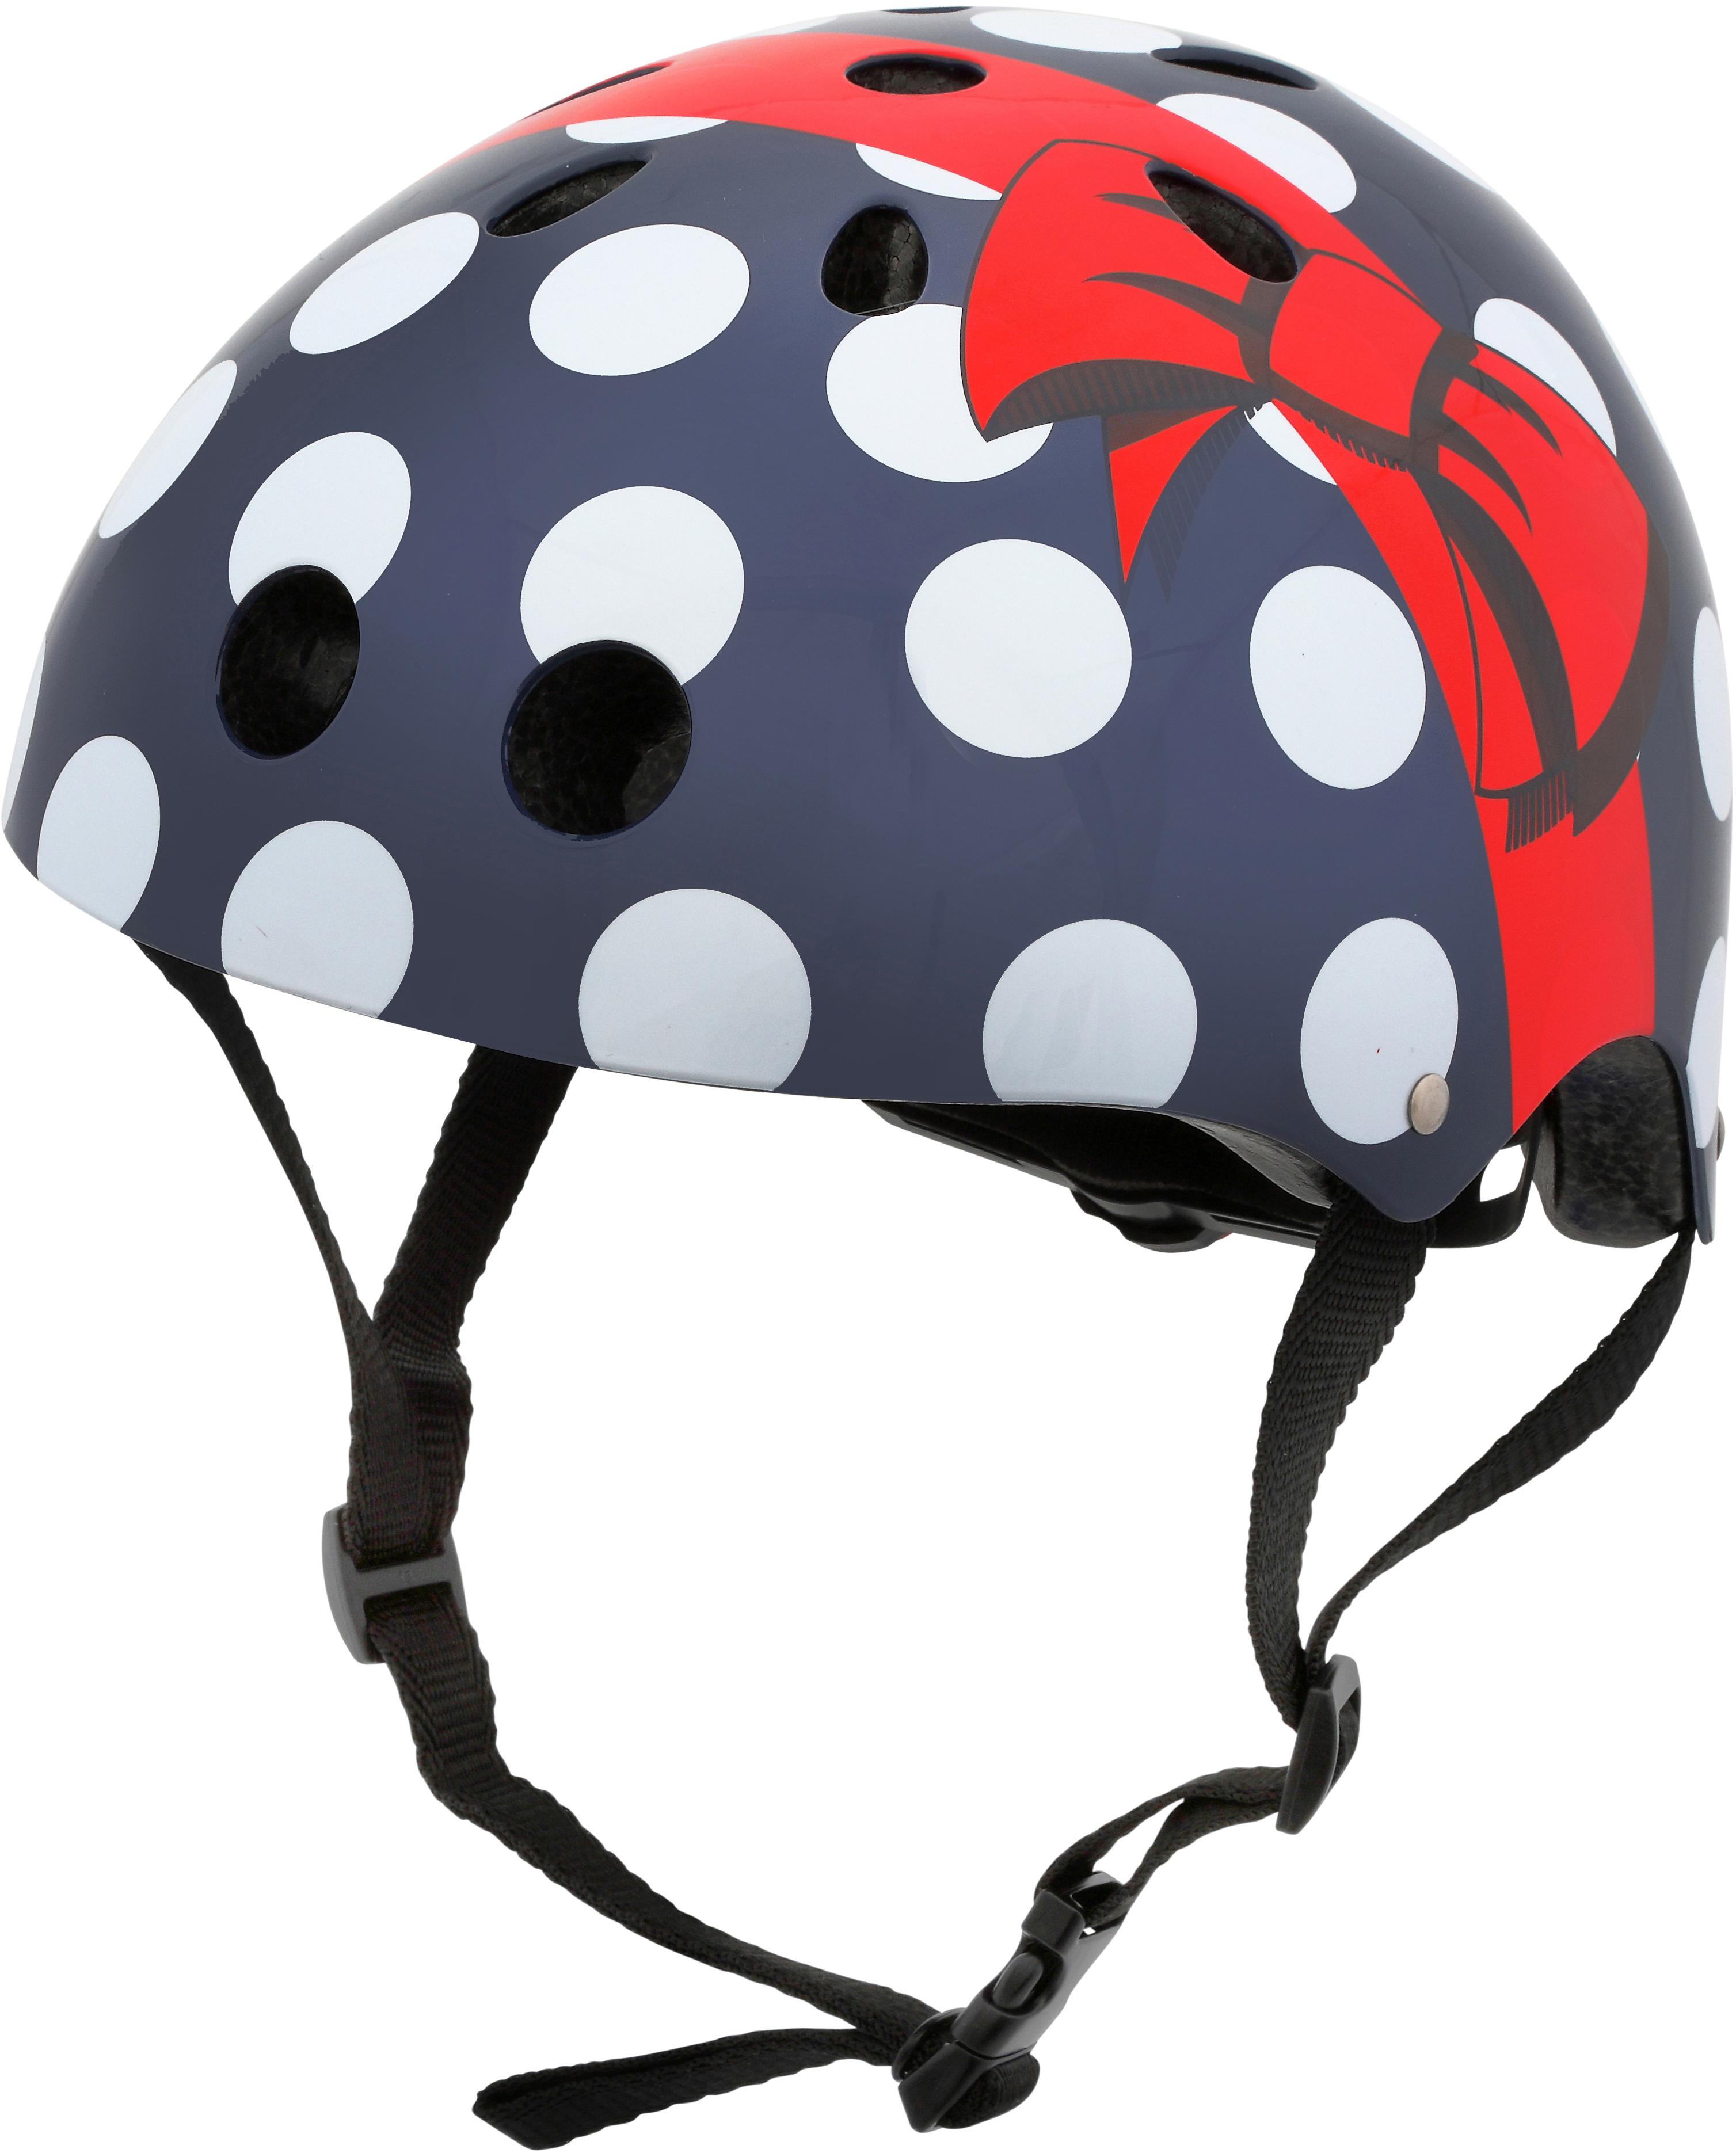 Hornit Polka Dot Helmet W/Led - 53-58Cm